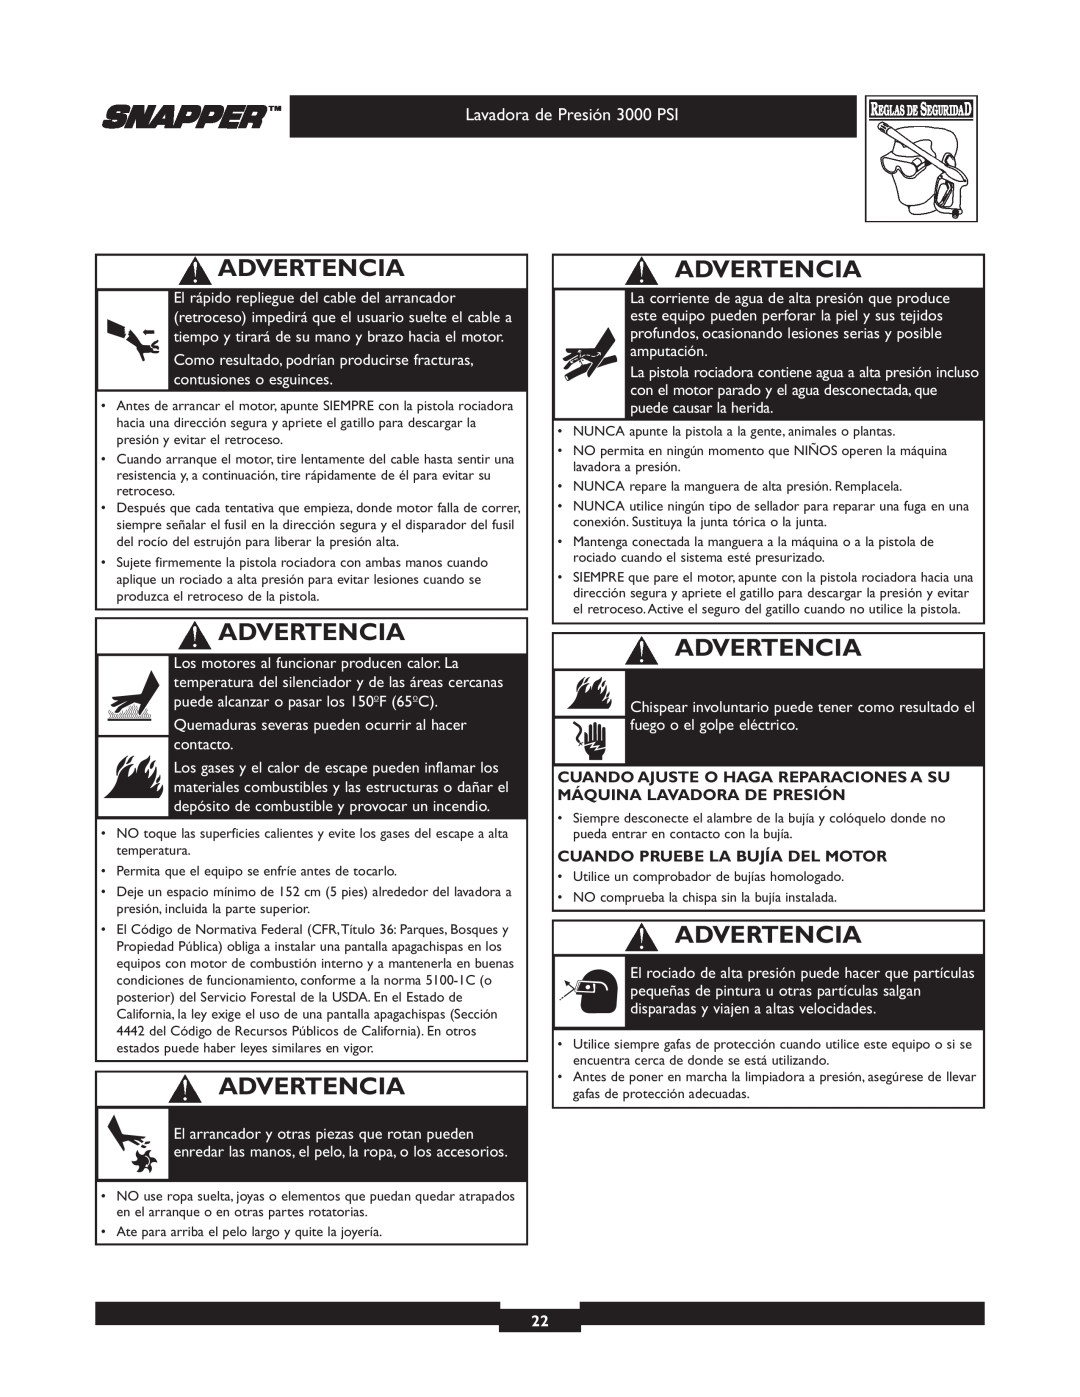 Snapper 020231-2 manual Advertencia, Lavadora de Presión 3000 PSI, Quemaduras severas pueden ocurrir al hacer contacto 